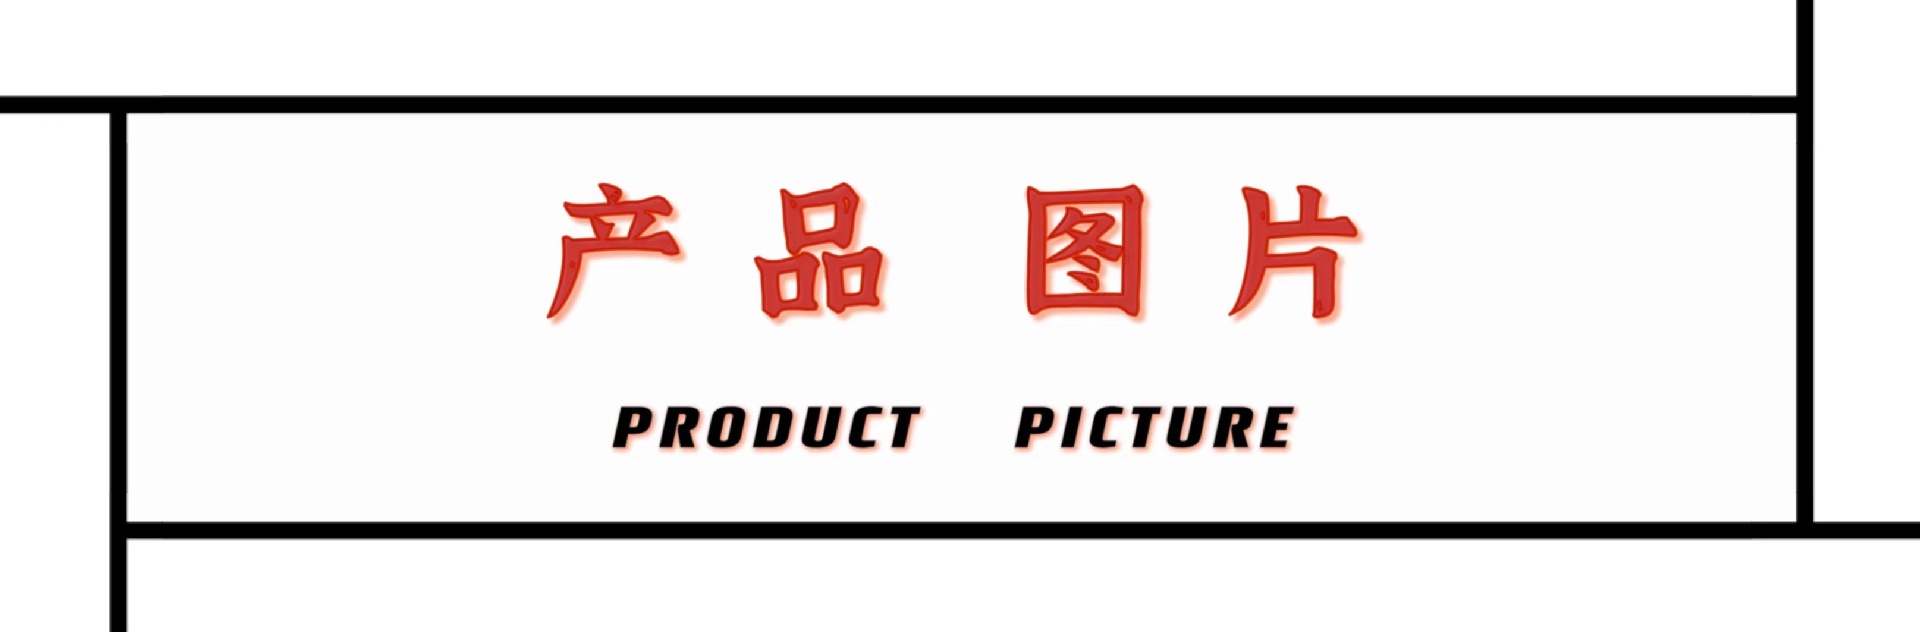 产品图片.jpg